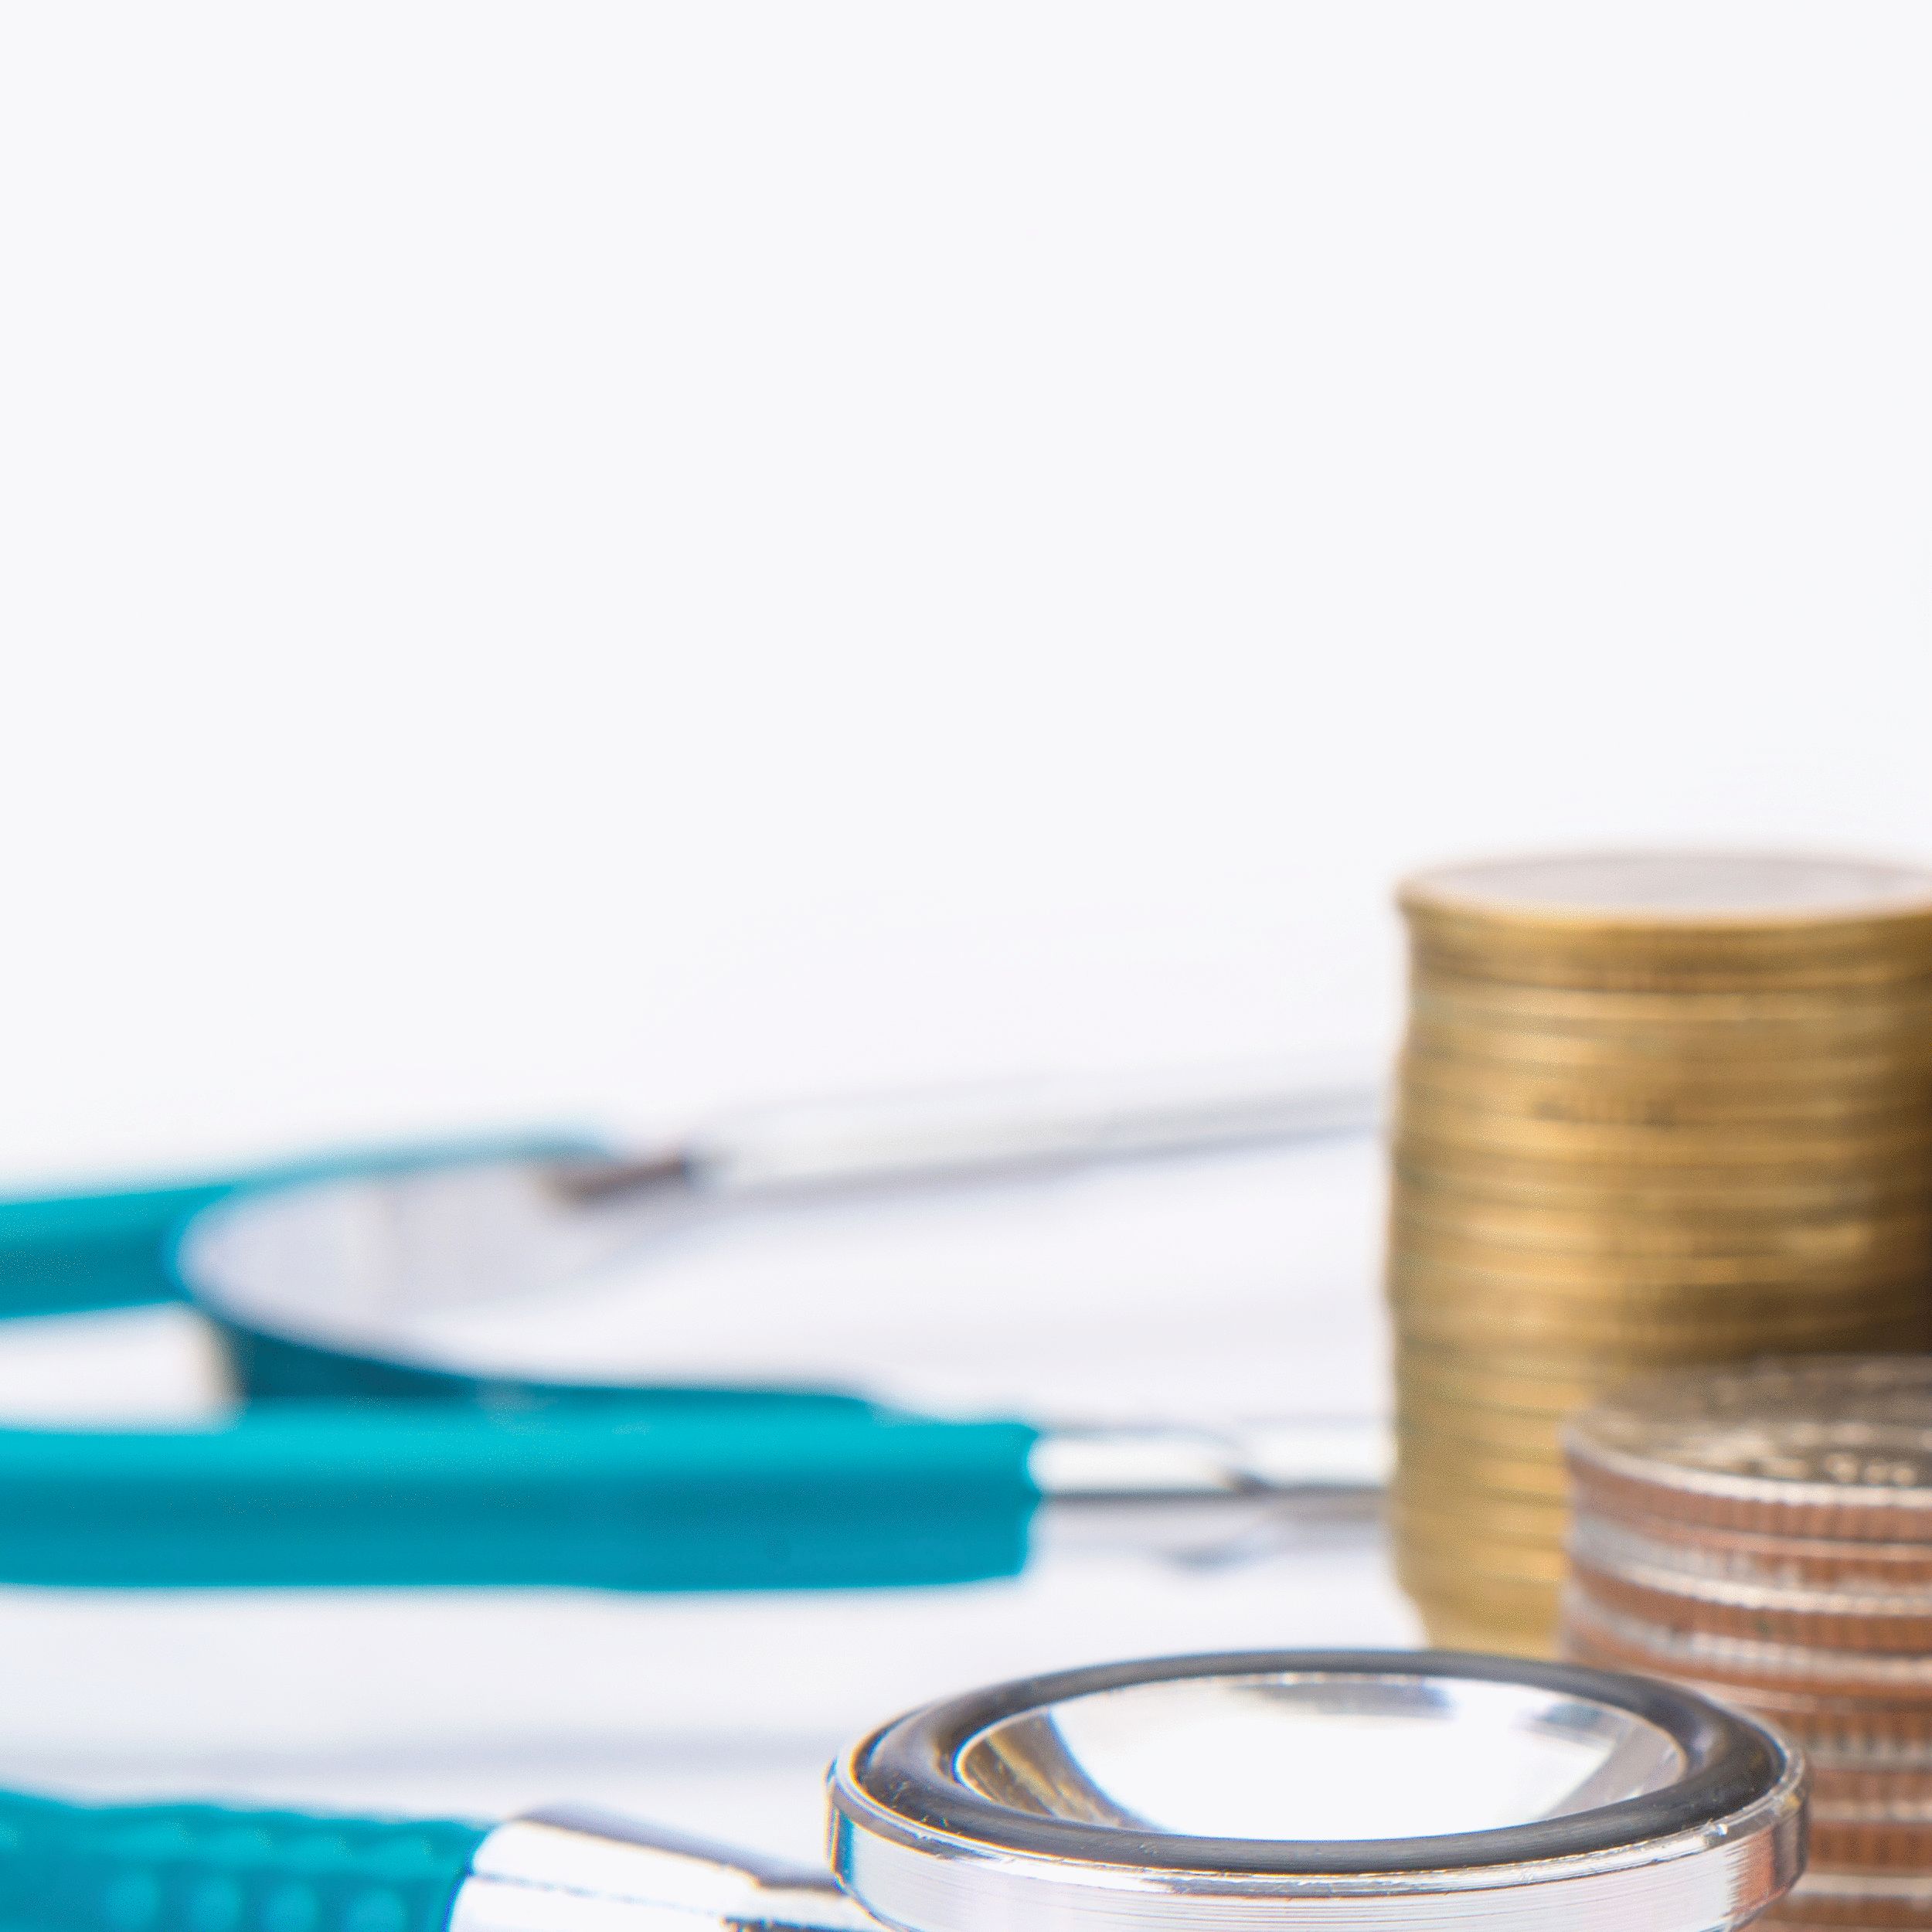 Gesetzliche Krankenkassen: Finanzierung soll stabilisiert werden